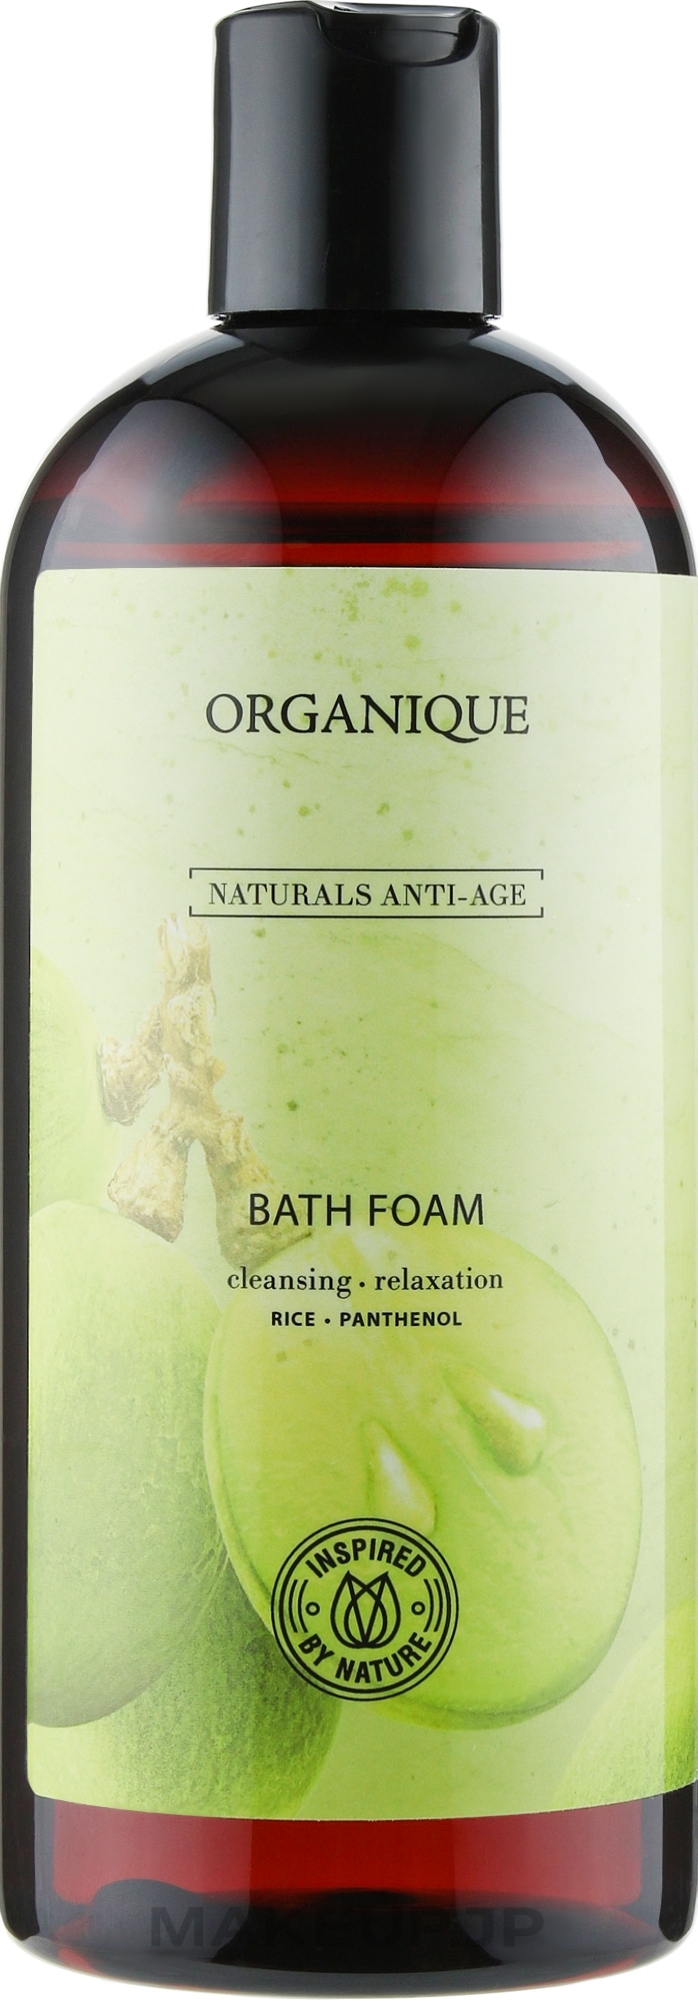 Anti-Aging Rice & Panthenol Bath Foam - Organique Naturals Anti-Age Bath Foam — photo 400 ml